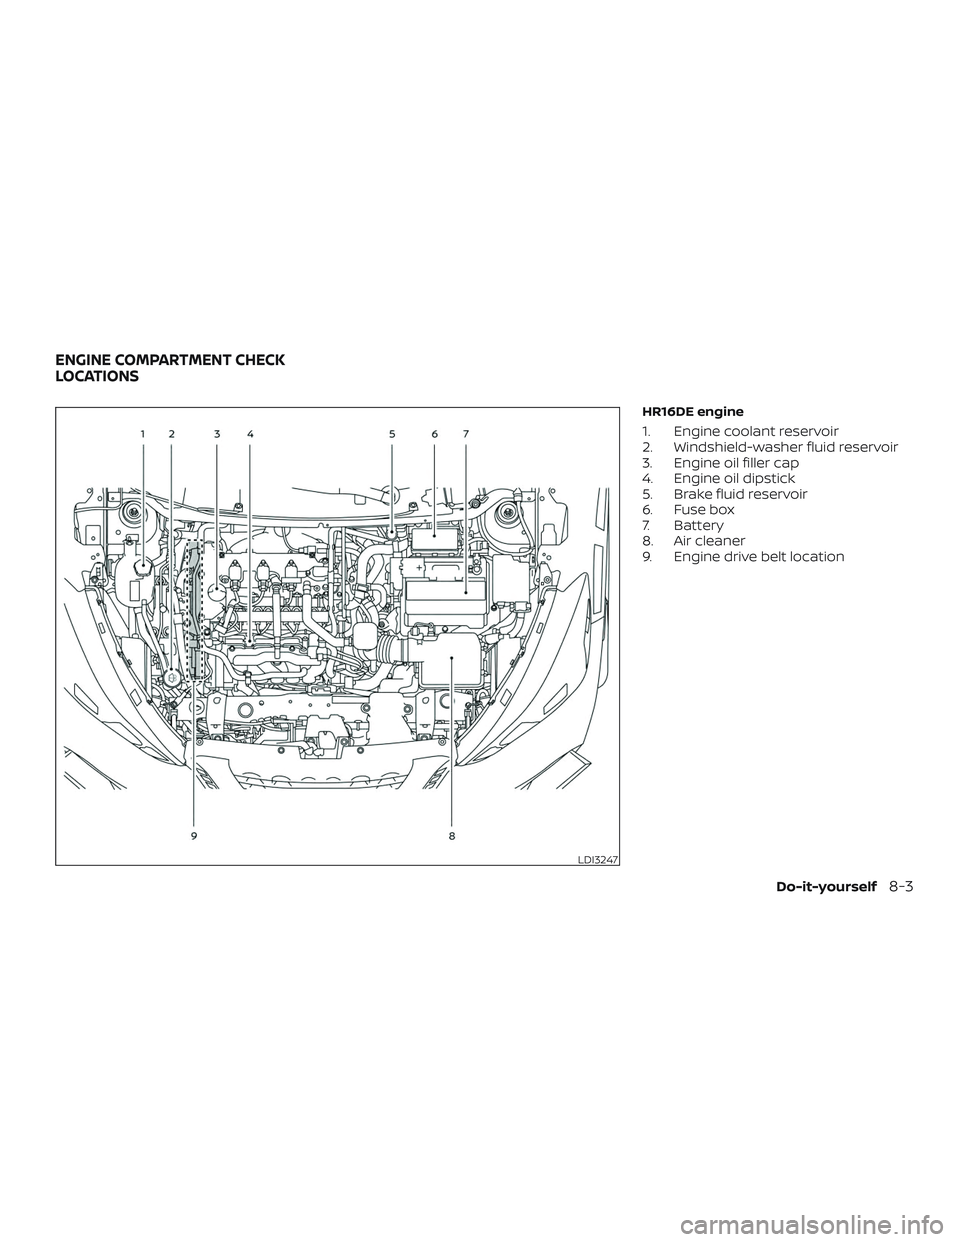 NISSAN LEAF 2018  Owner´s Manual HR16DE engine
1. Engine coolant reservoir
2. Windshield-washer fluid reservoir
3. Engine oil filler cap
4. Engine oil dipstick
5. Brake fluid reservoir
6. Fuse box
7. Battery
8. Air cleaner
9. Engine 